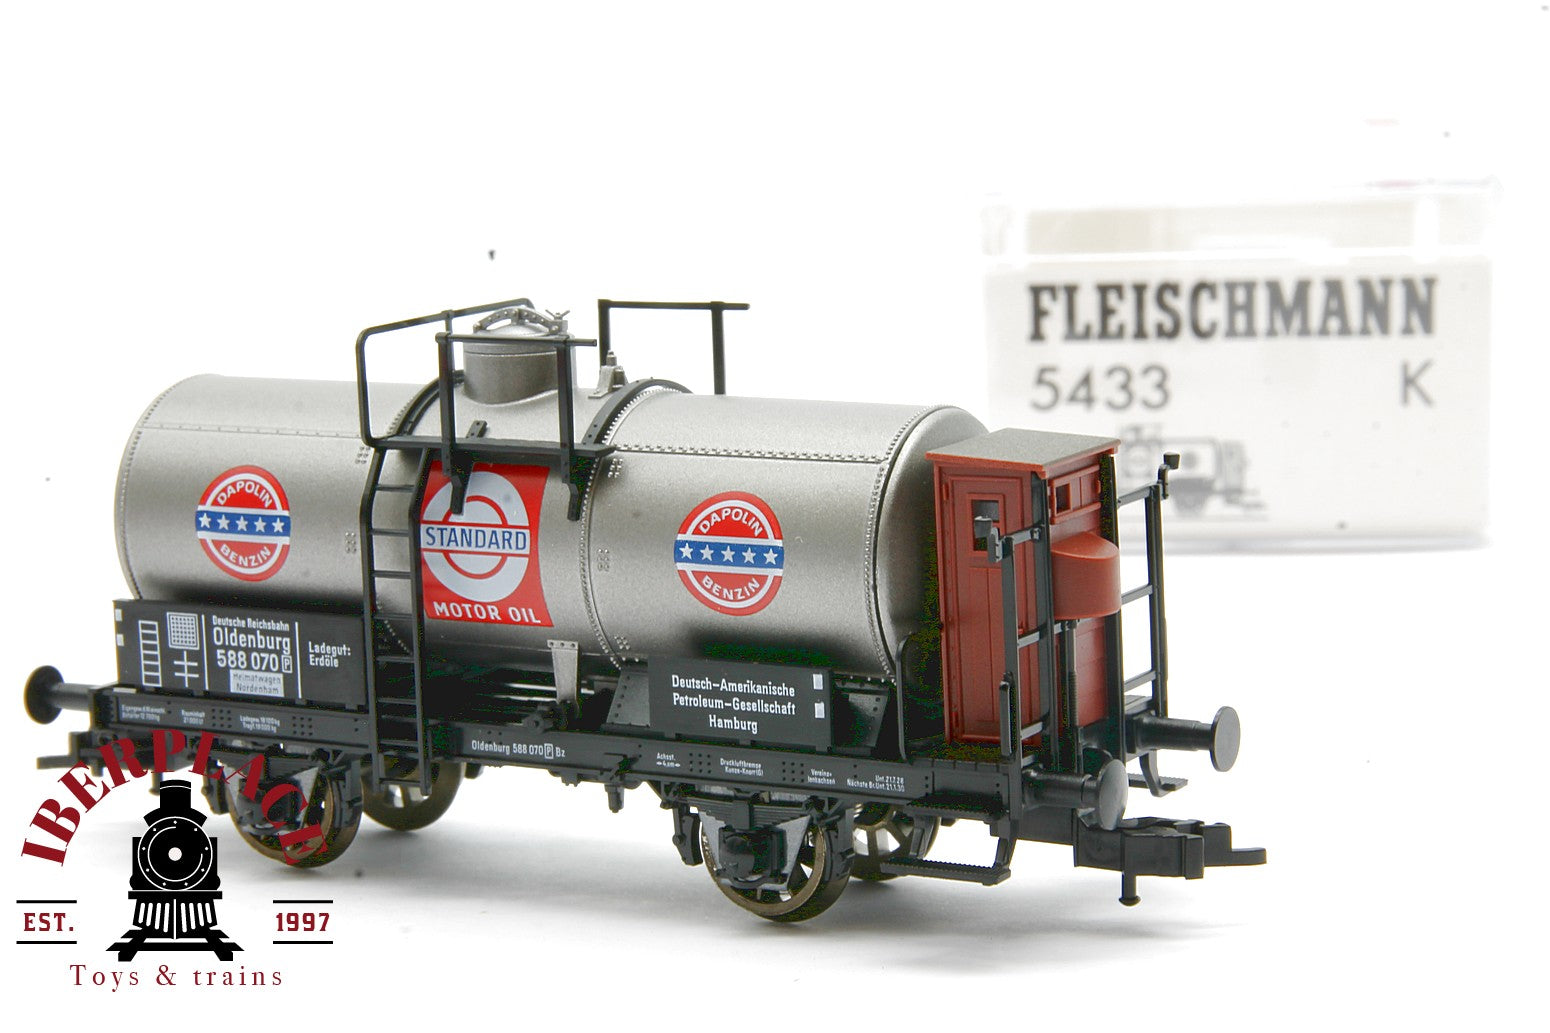 Fleischmann 5433K vagón mercancías Motor Oil DR 588 070 escala H0 1:87 ho 00